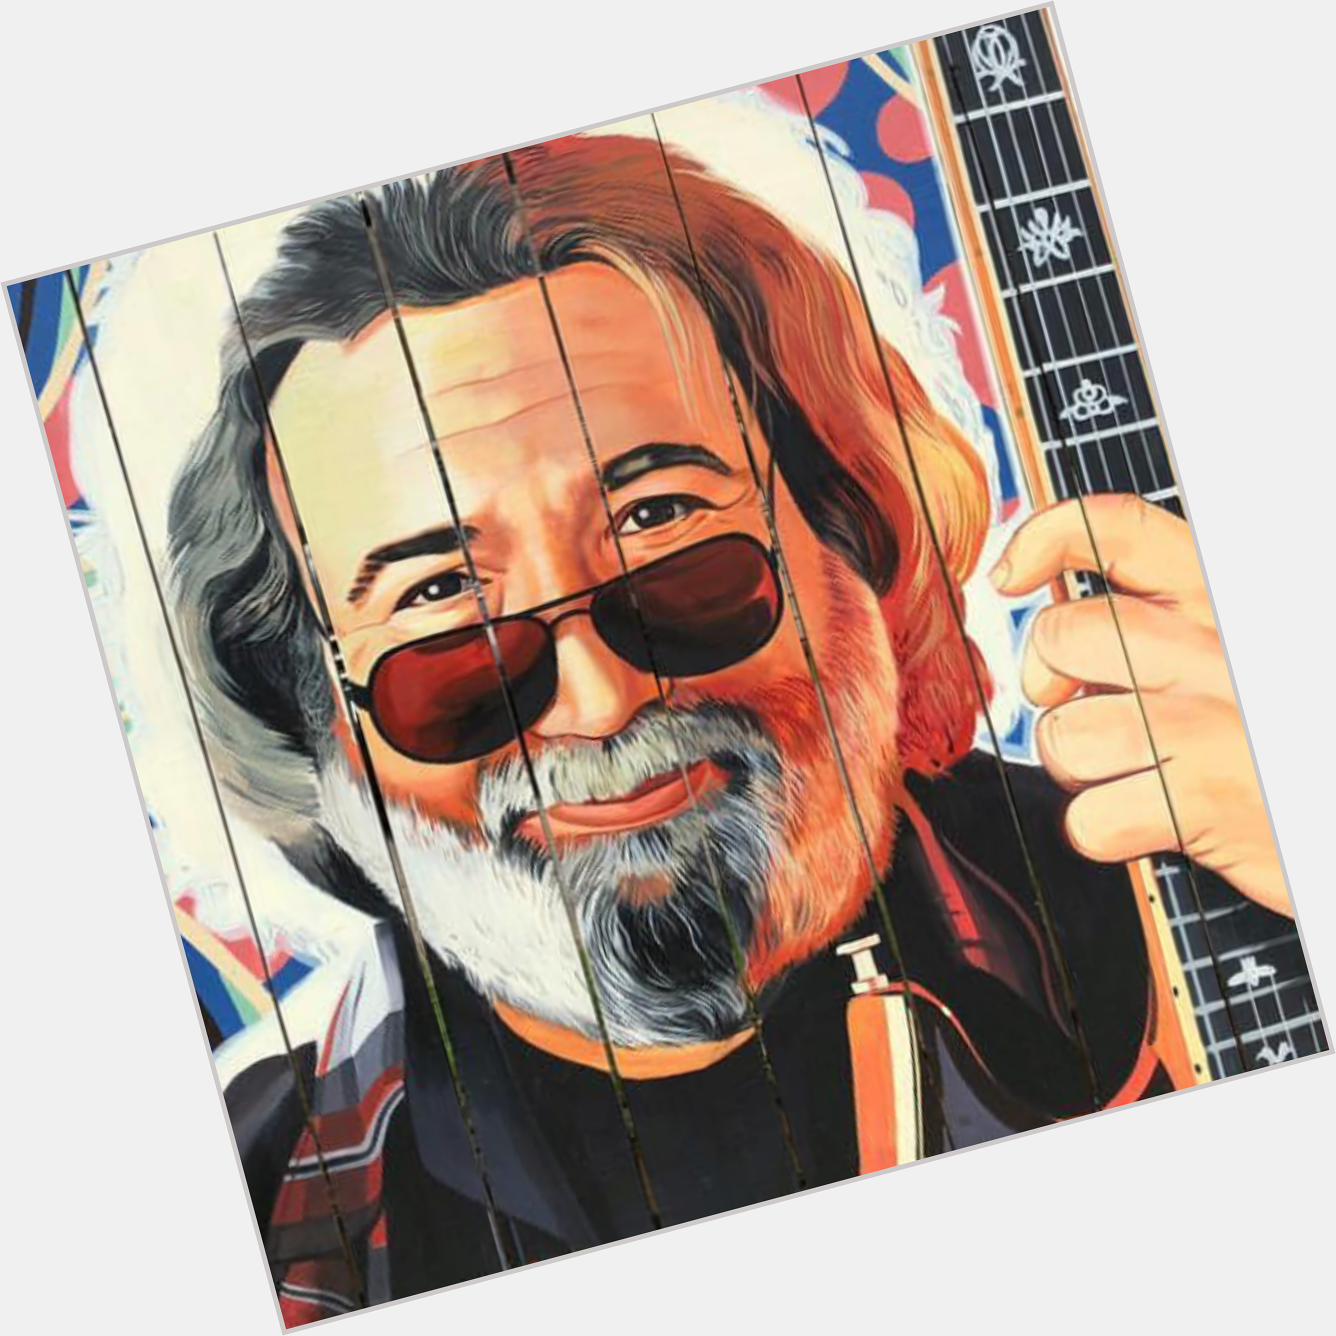 Happy Birthday, Jerry Garcia!  